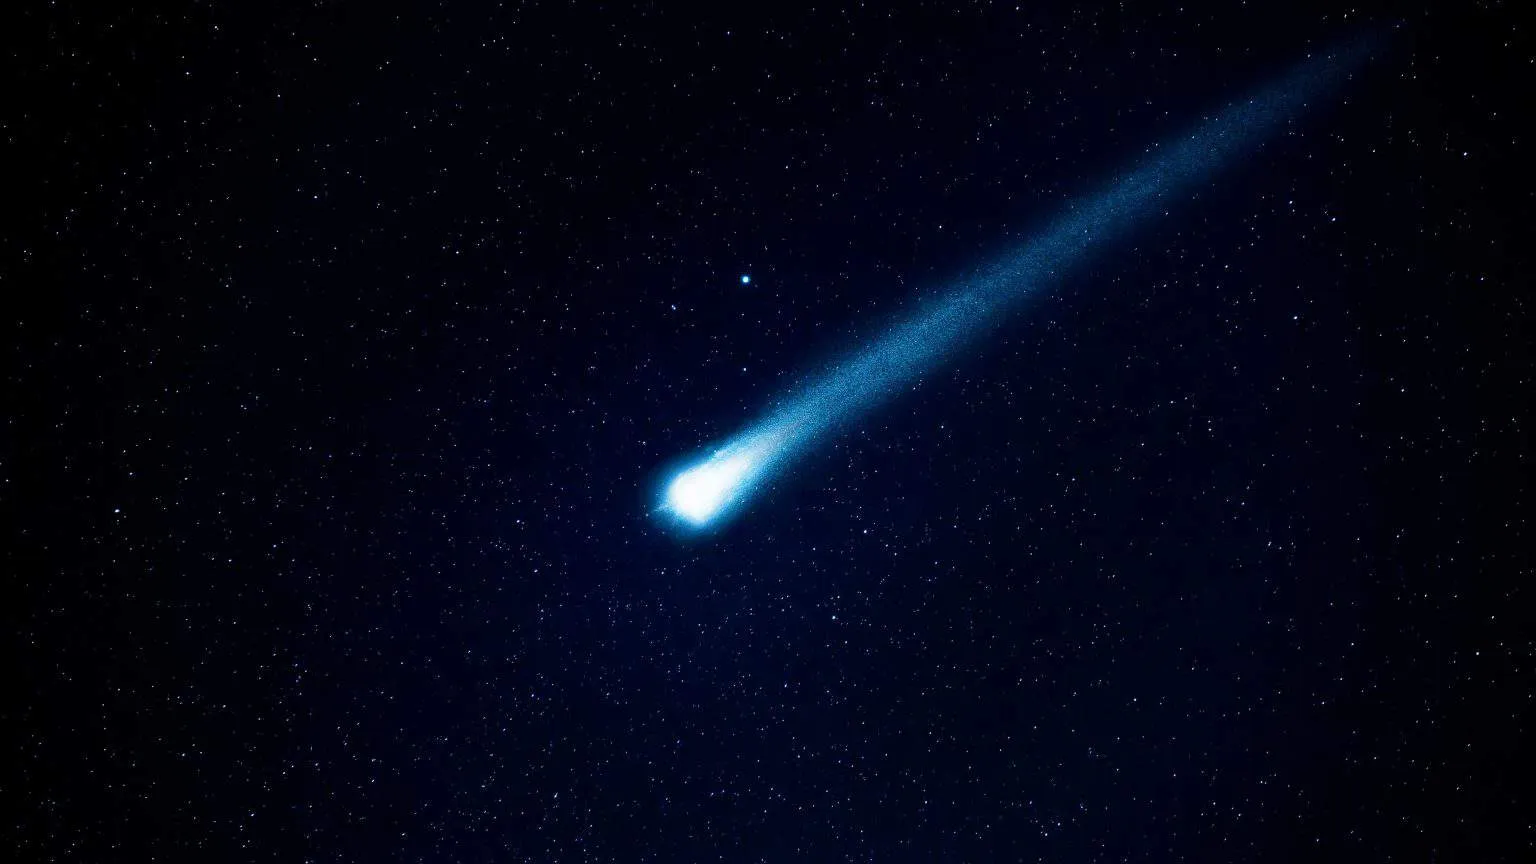 O Observatório Heller & Jung registrou o momento em que um meteoro cruzou o céu sobre o mar